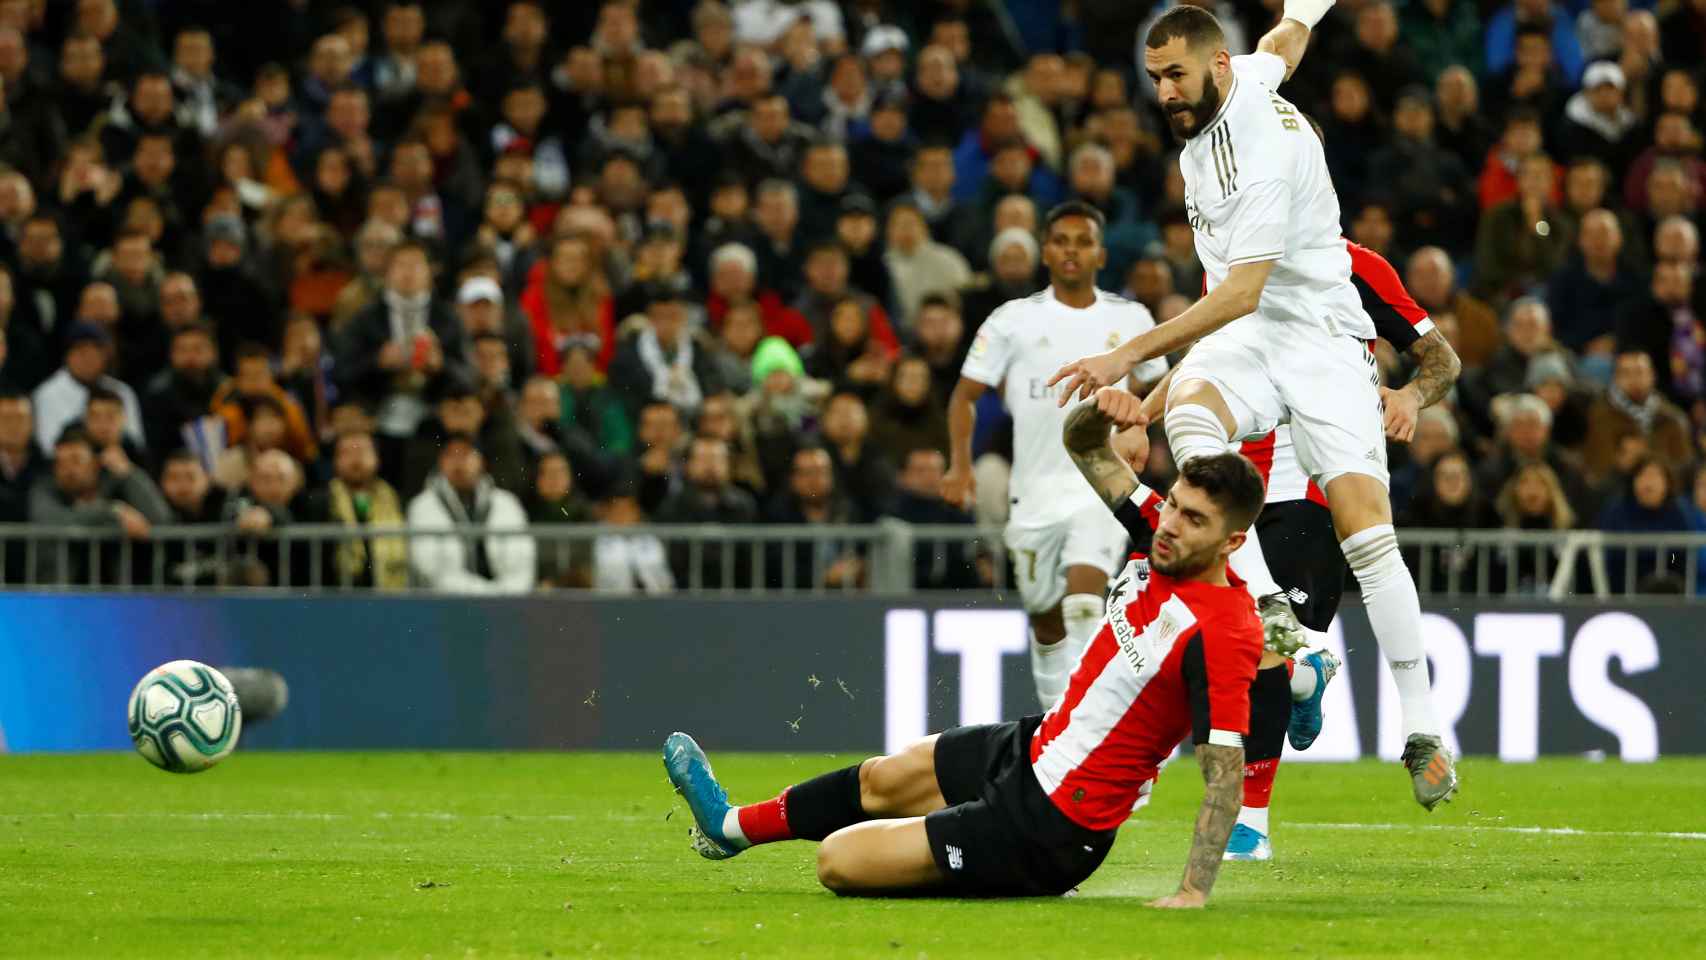 Benzema dispara a puerta con un jugador del Athletic delante